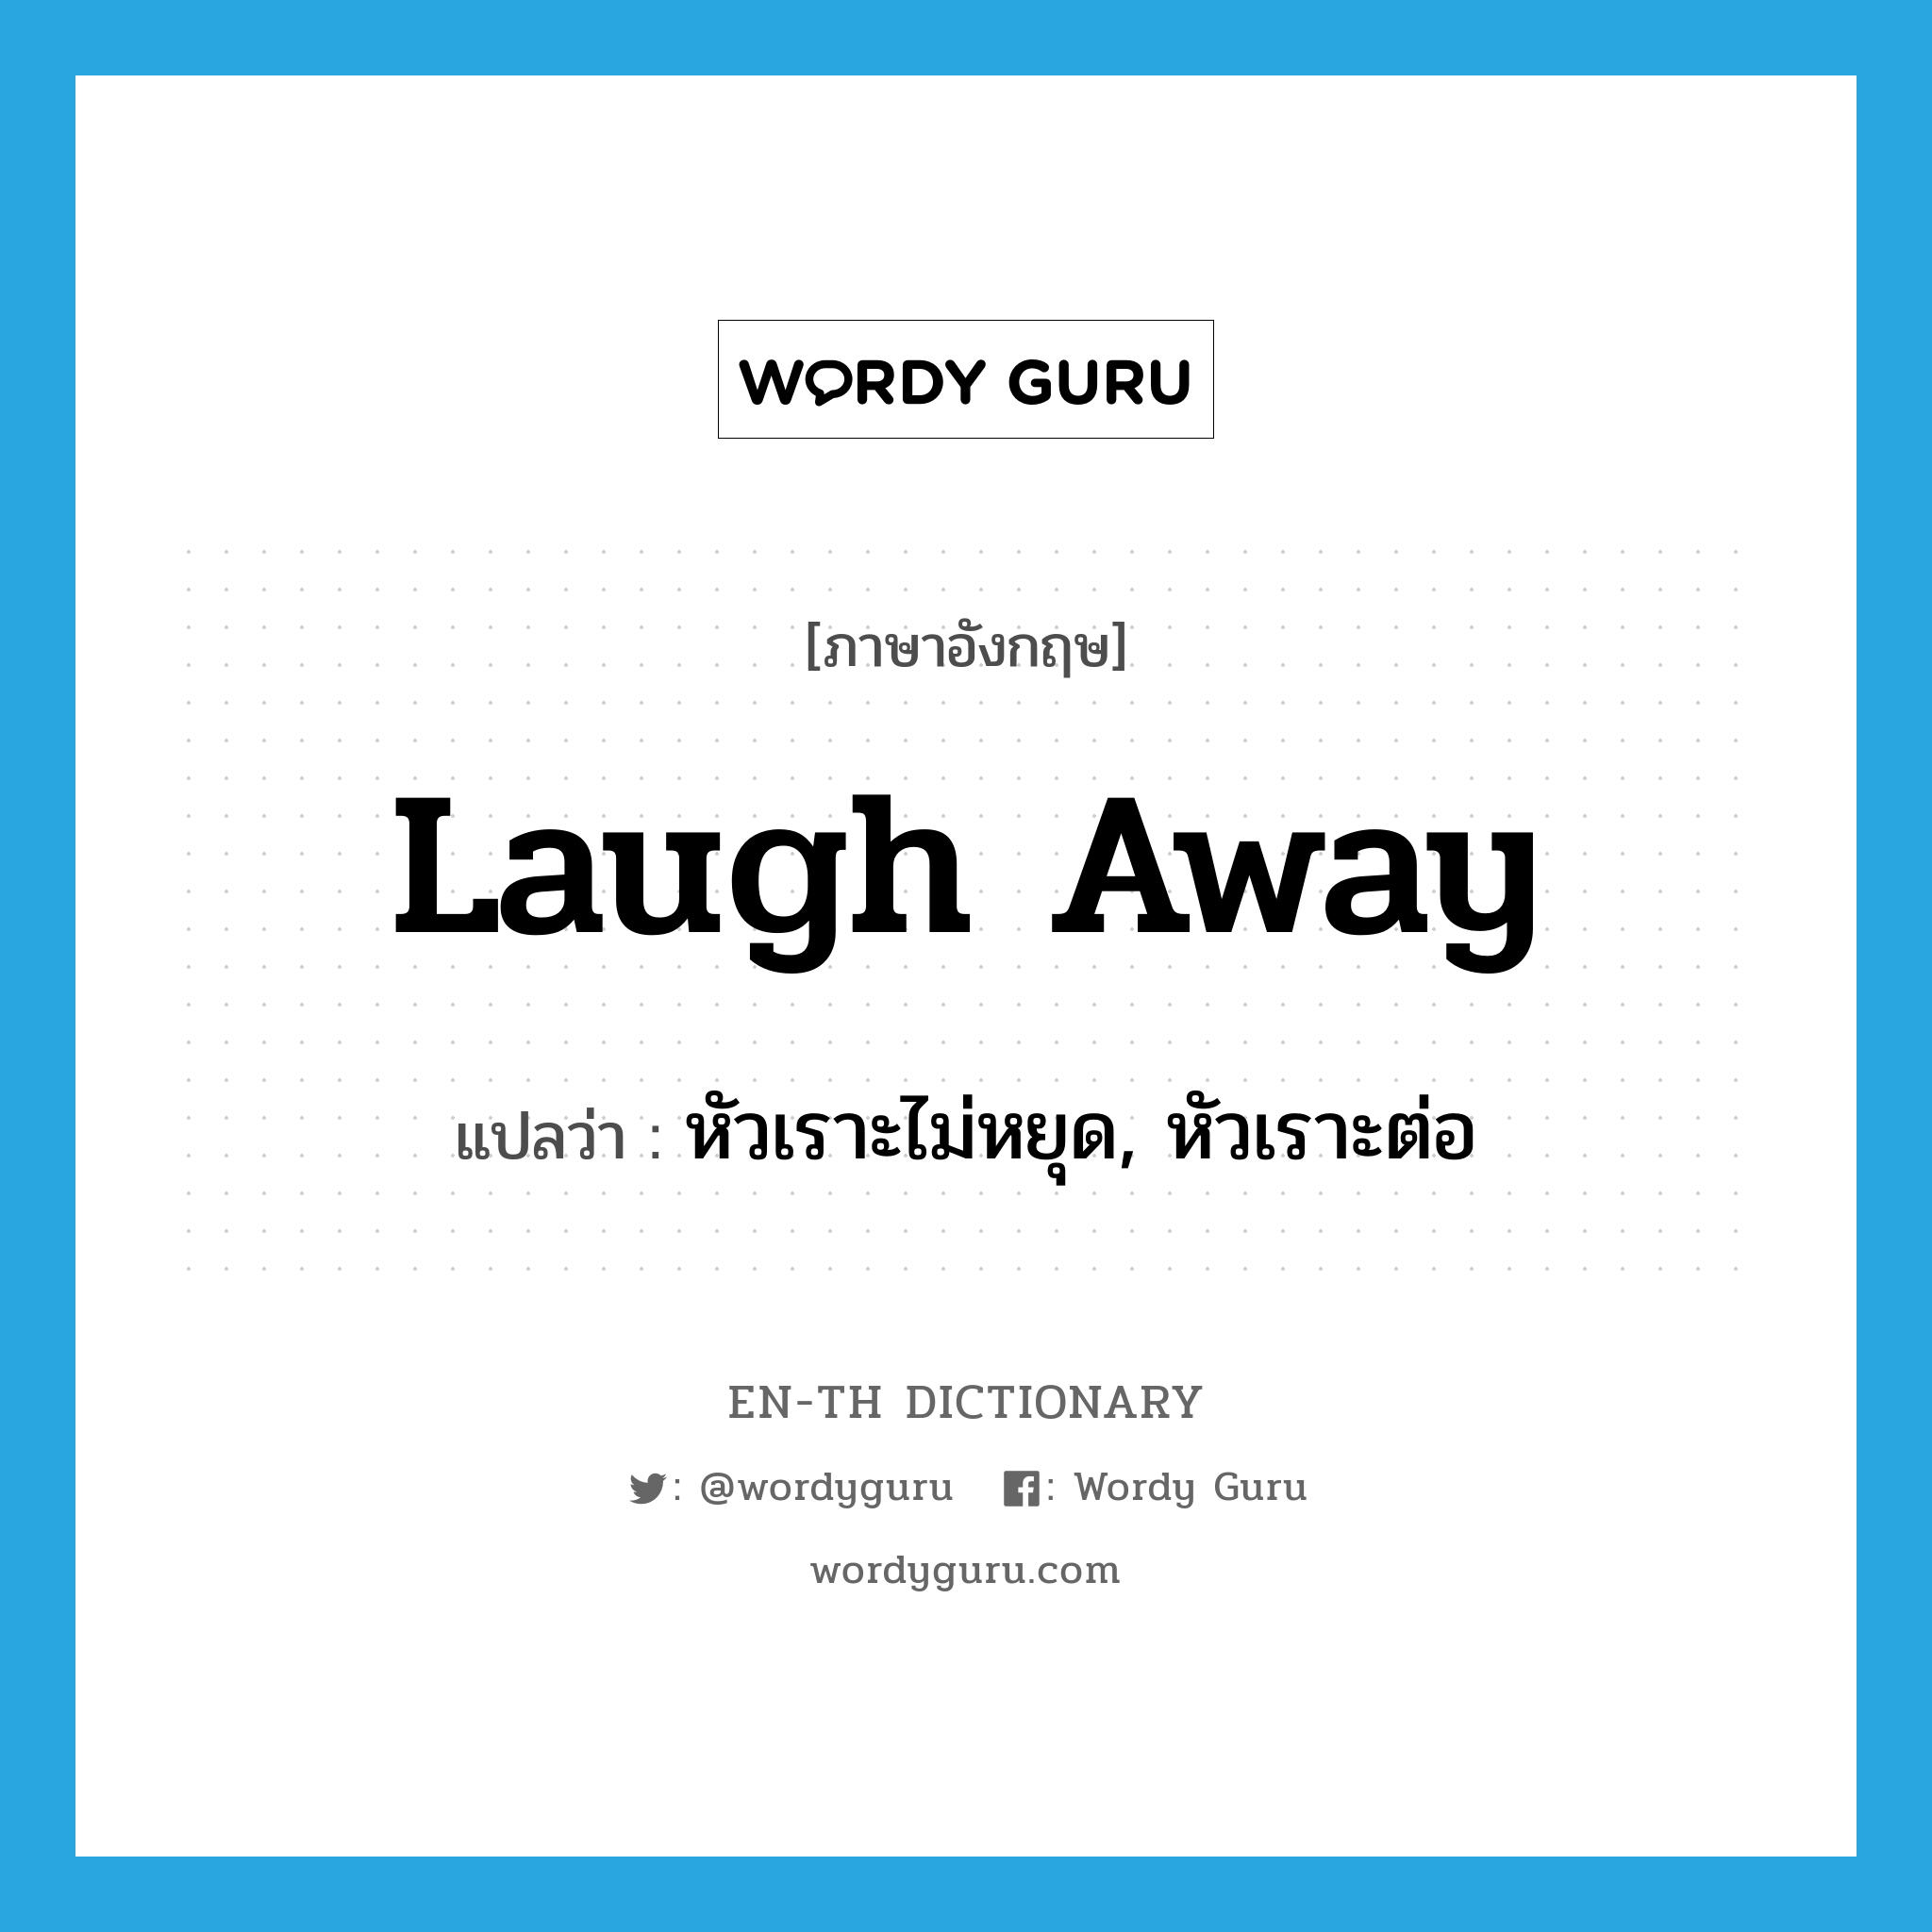 หัวเราะไม่หยุด, หัวเราะต่อ ภาษาอังกฤษ?, คำศัพท์ภาษาอังกฤษ หัวเราะไม่หยุด, หัวเราะต่อ แปลว่า laugh away ประเภท PHRV หมวด PHRV